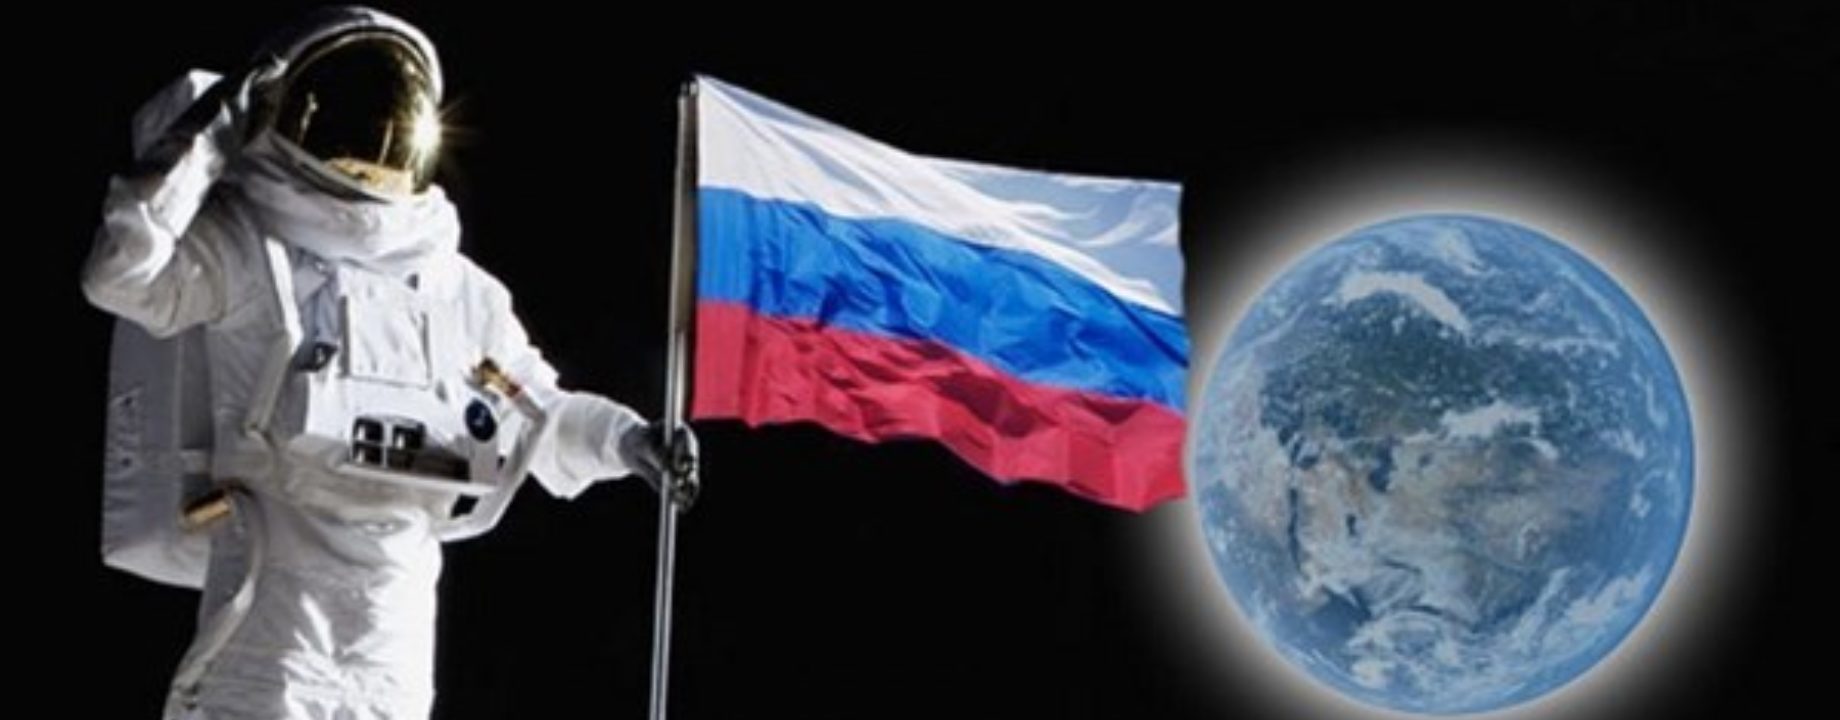 orosz kozmonauta